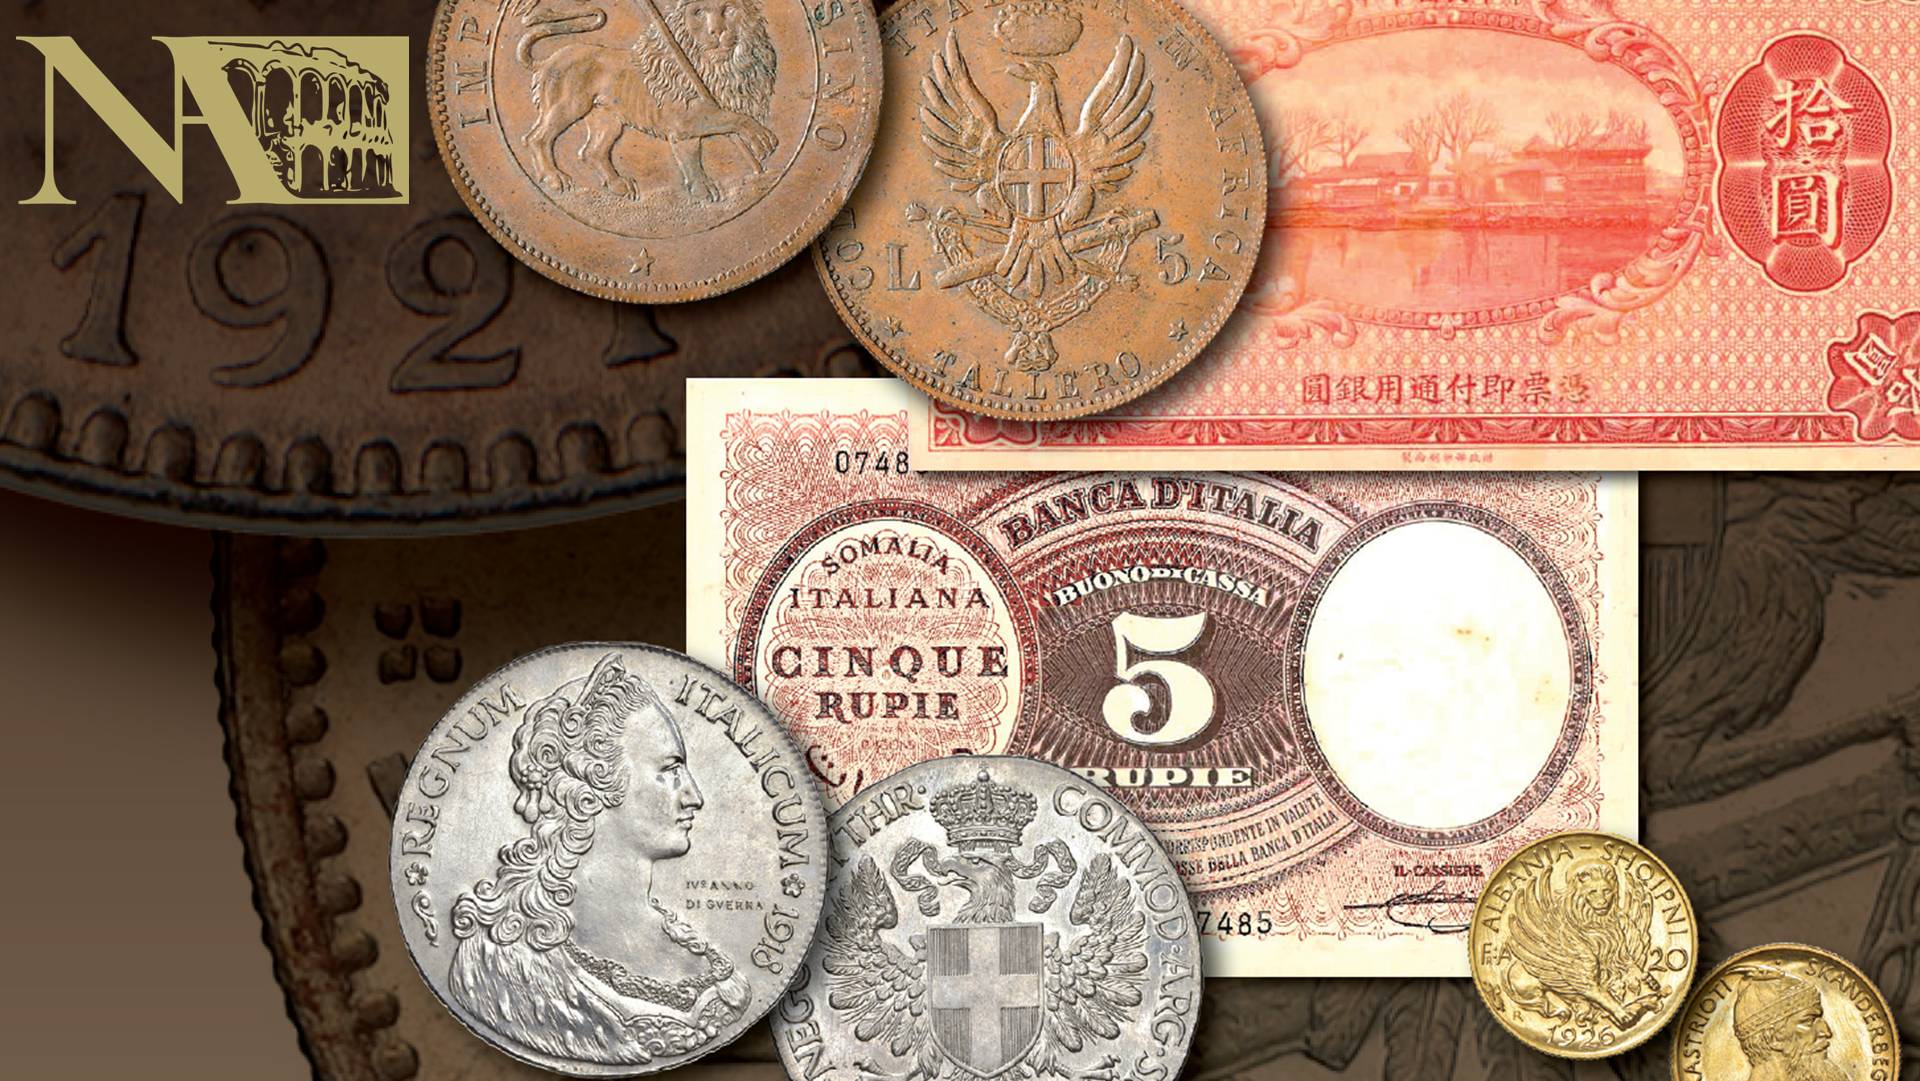 da assab all'afis monete banconote italia colonie eritrea somalia tientsin albania prove progetti rarità nomnisma verona asta